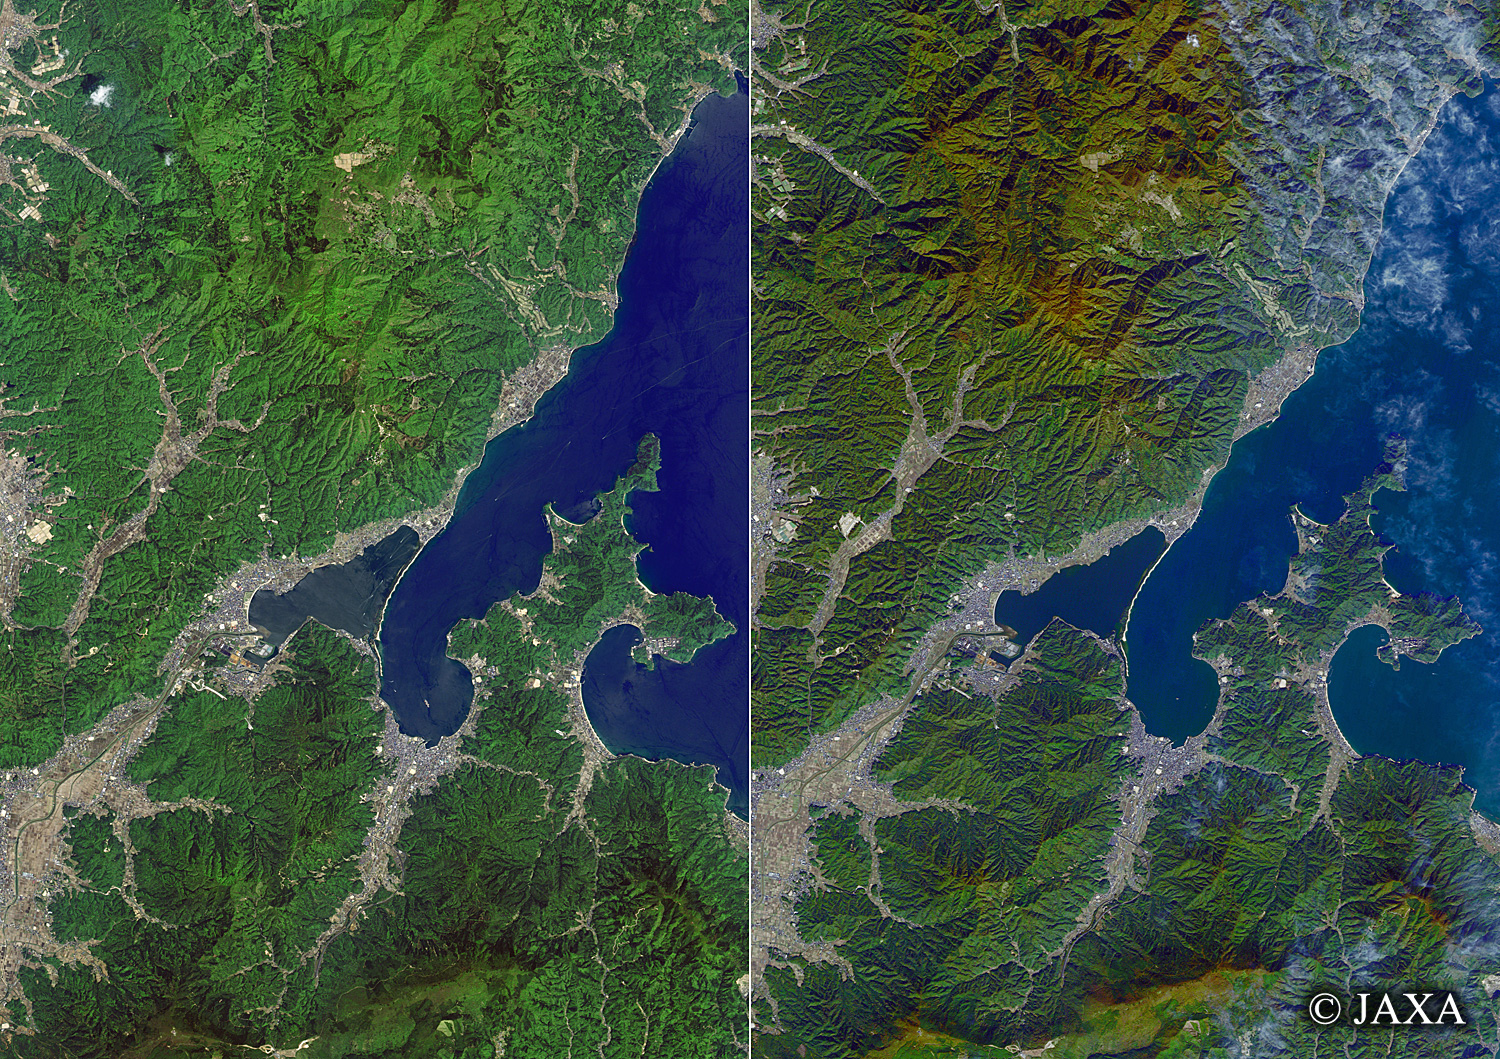 だいちから見た日本の都市 天橋立:衛星画像